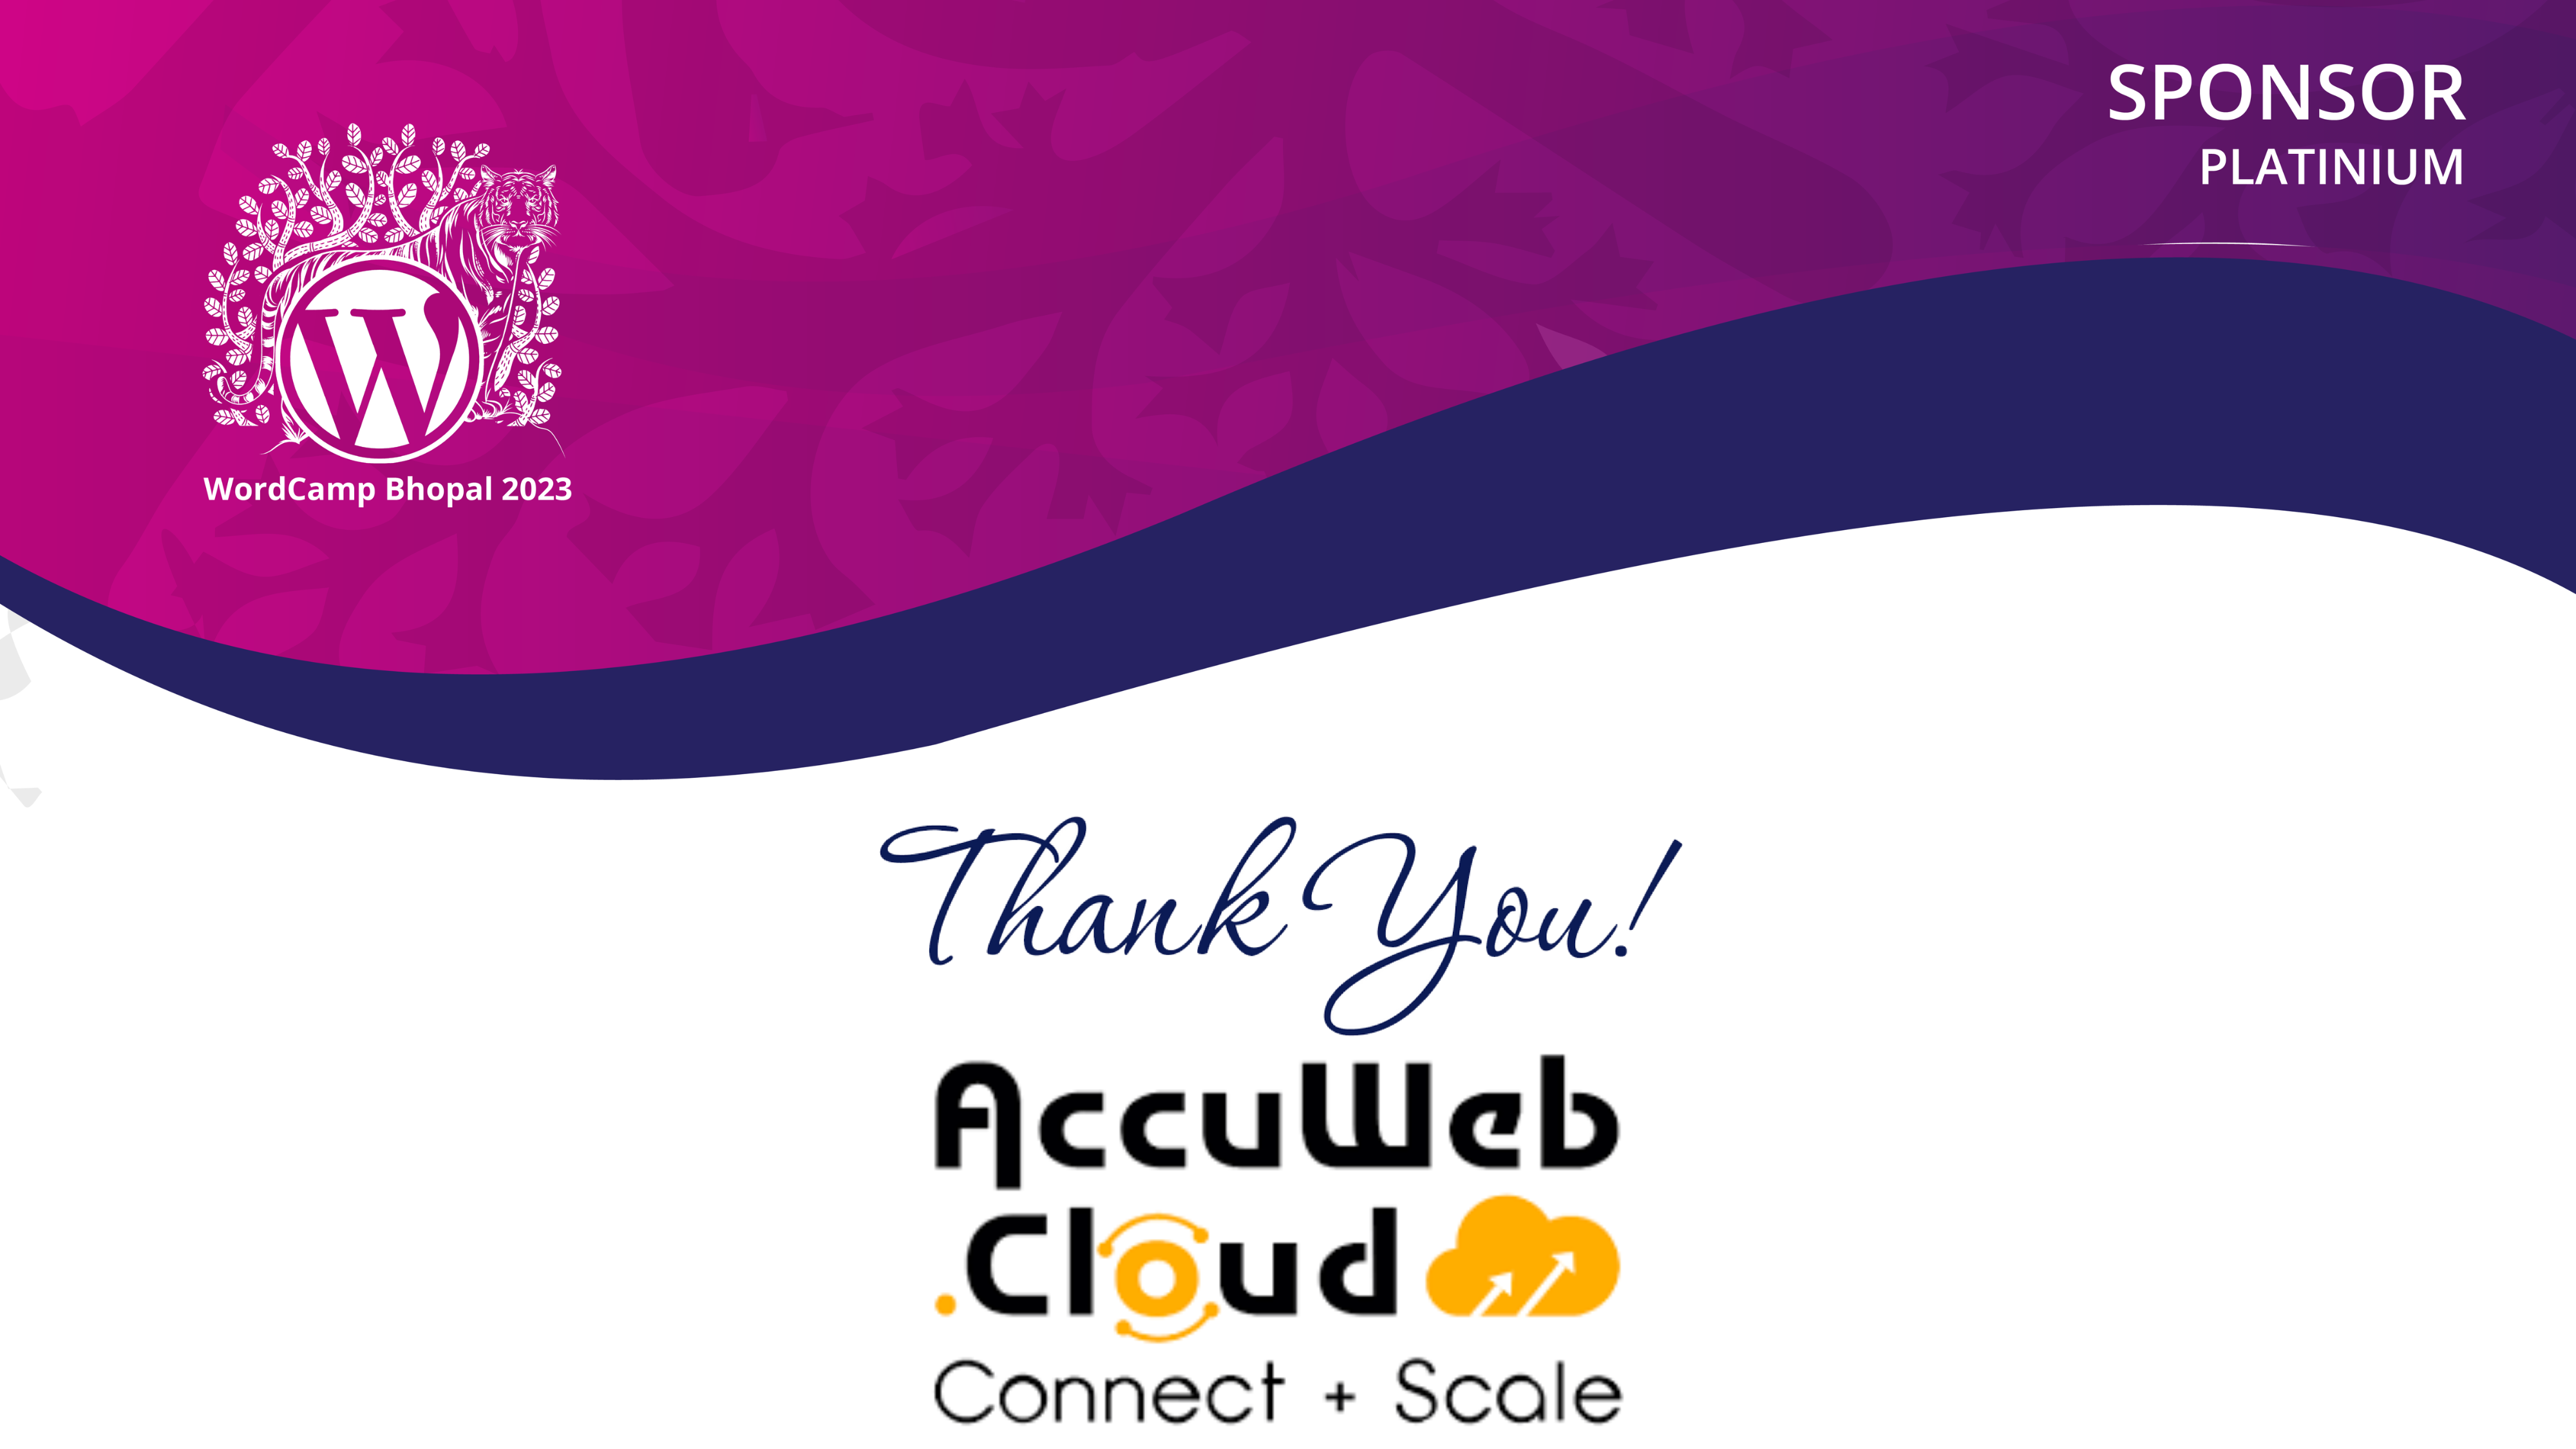 AccuWeb.cloud Joins us as a Platinum Sponsor!